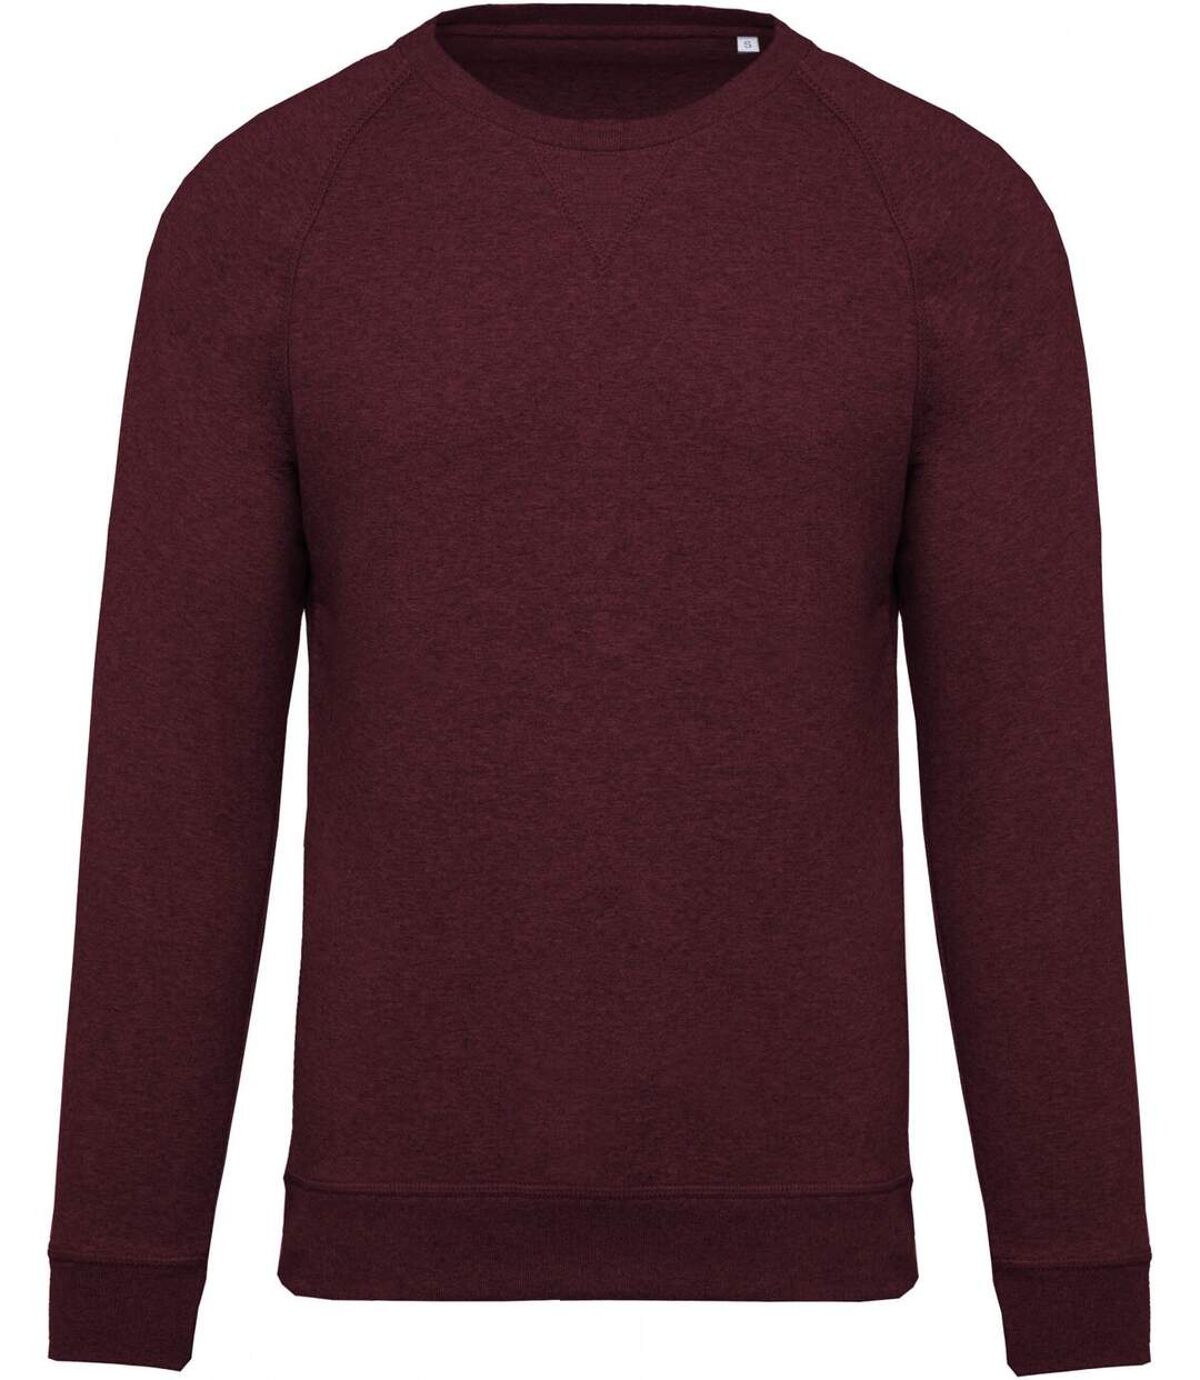 Sweat shirt coton bio - Homme - K480 - rouge vin chiné